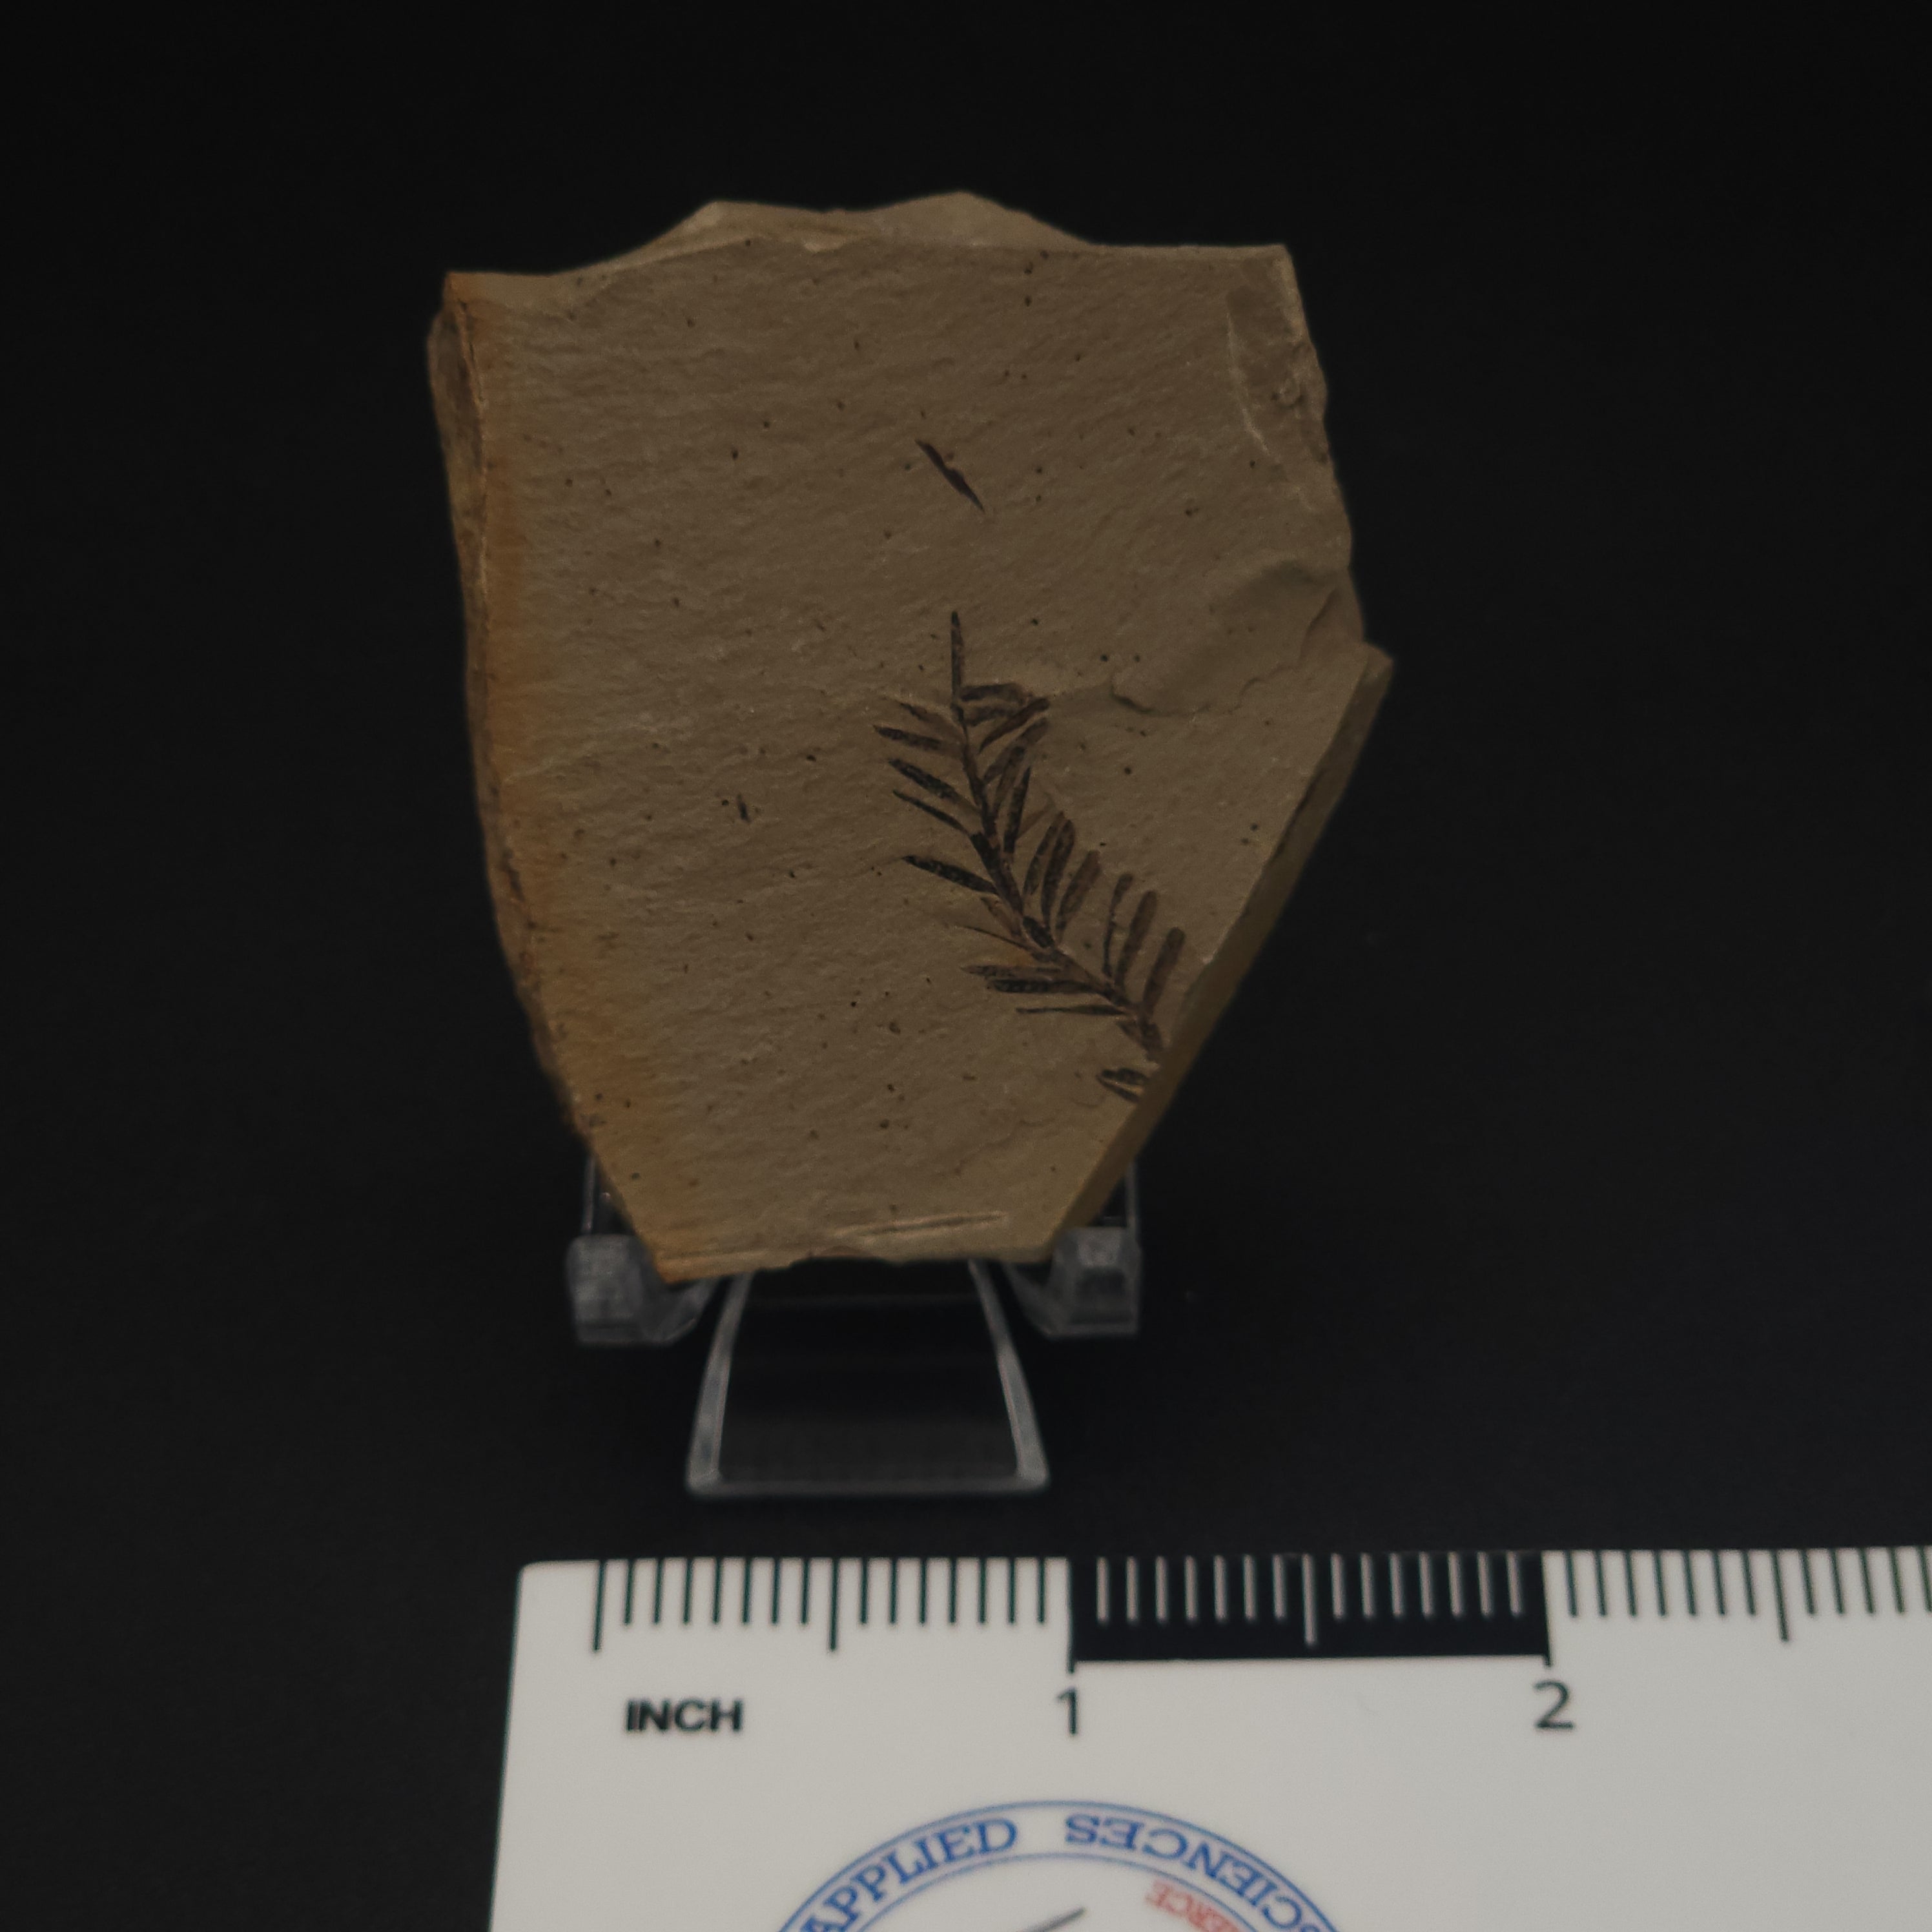 Metasequoia branchlet leaf fossil